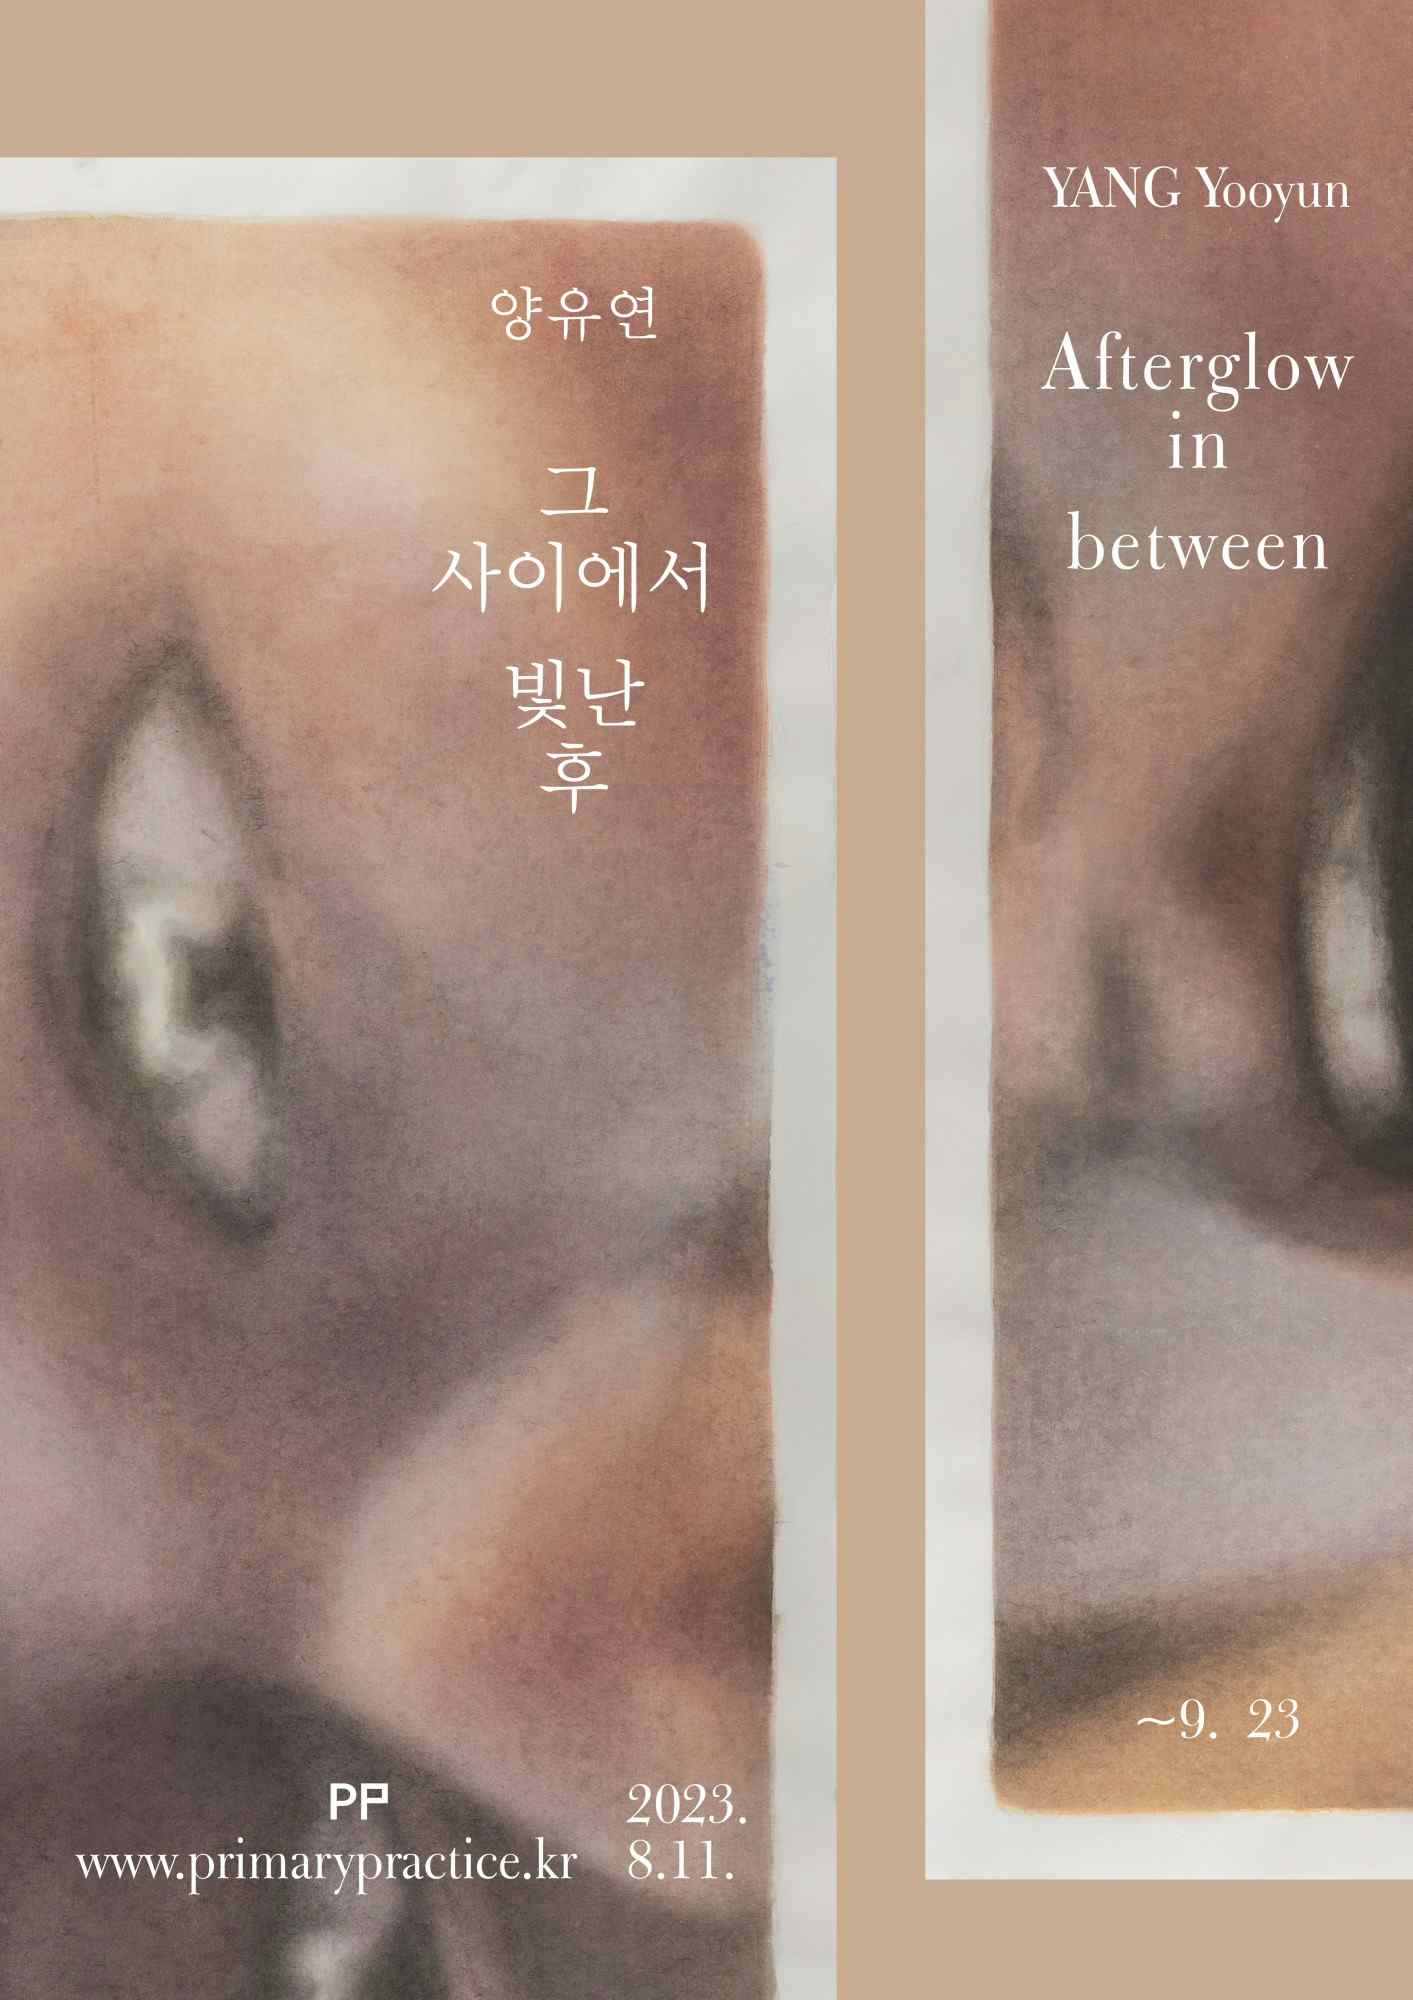 YANG Yooyun: Afterglow in between